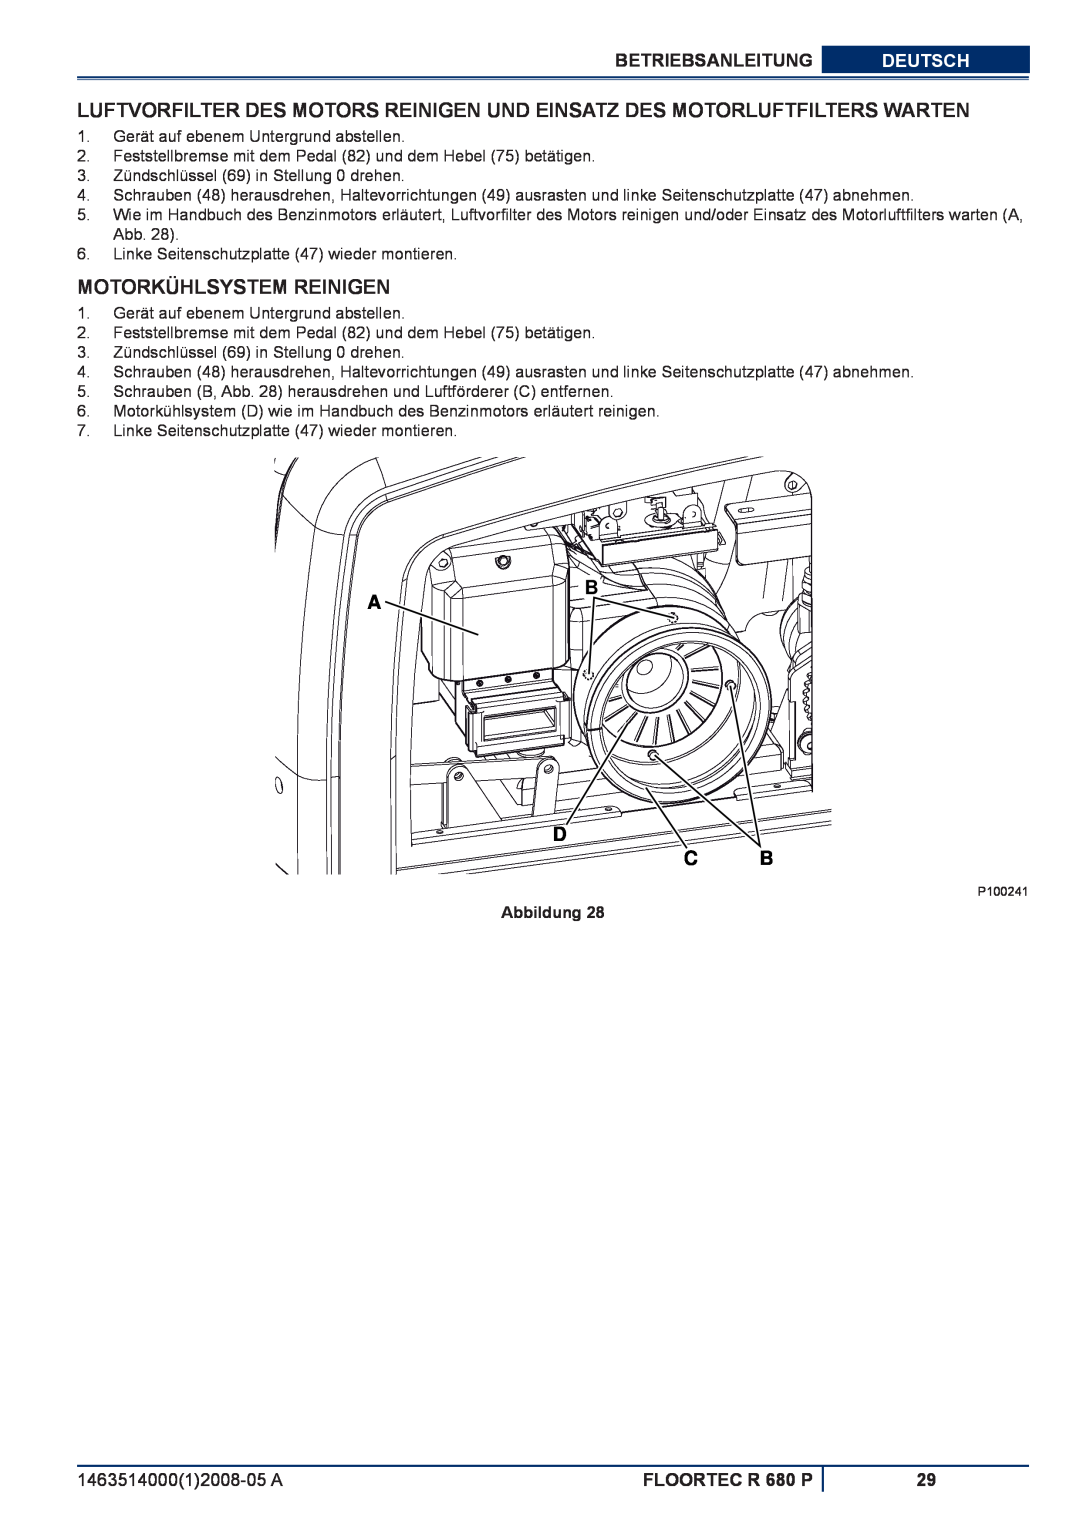 Nilfisk-ALTO Motorkühlsystem Reinigen, D C B, Betriebsanleitung, Deutsch, FLOORTEC R 680 P, Abbildung 